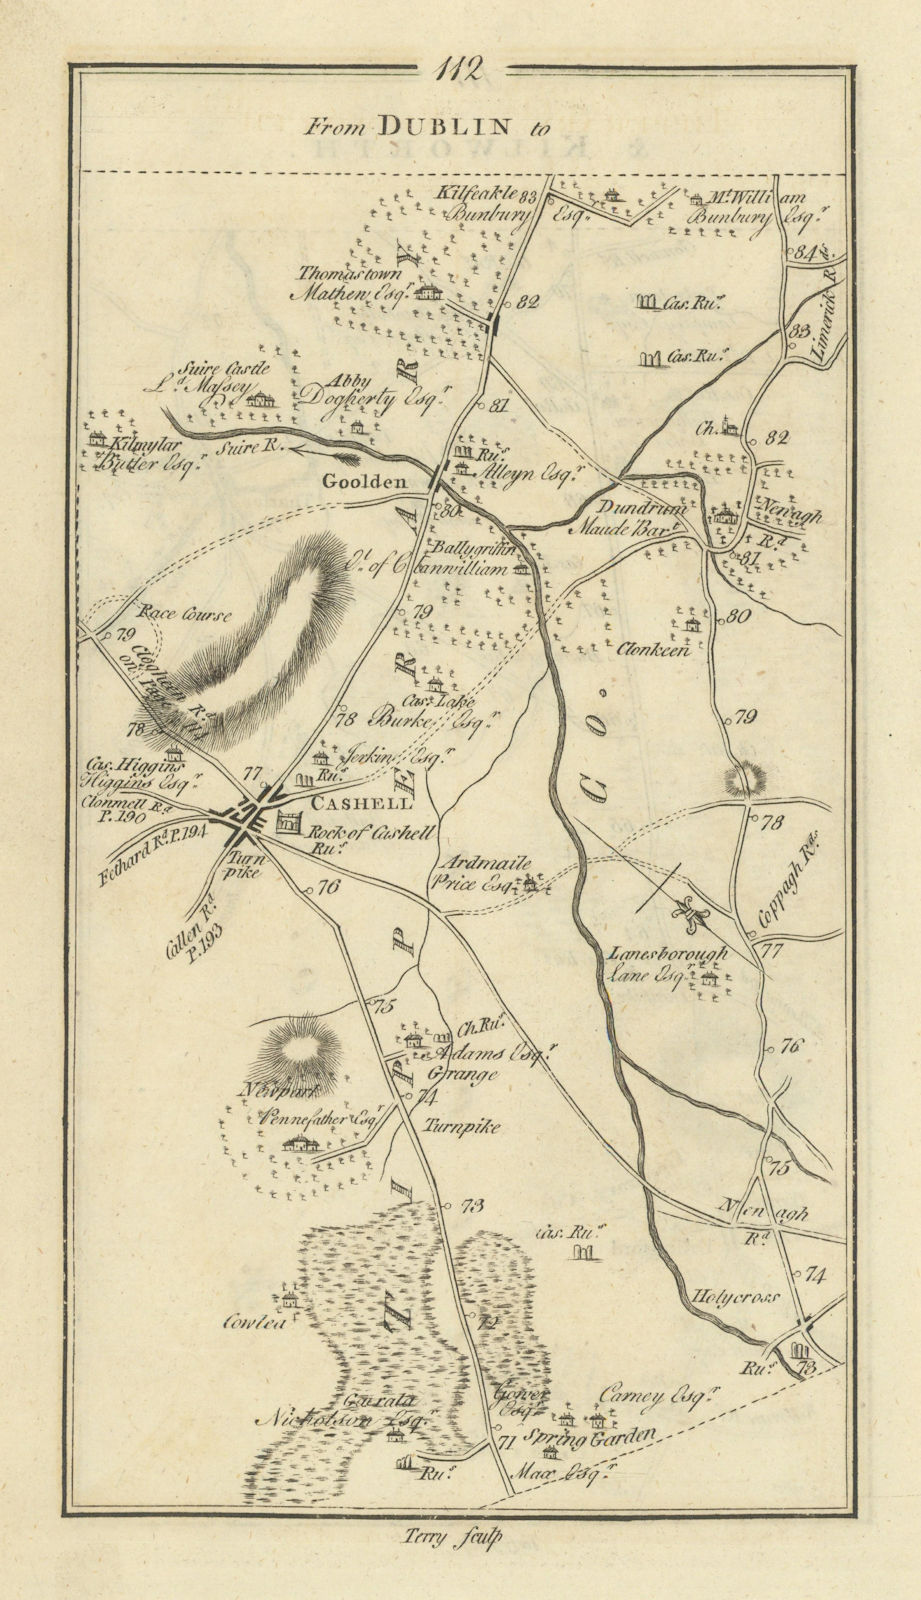 #112 Dublin to Tipperary & Kilworth. Golden Cashel. TAYLOR/SKINNER 1778 map